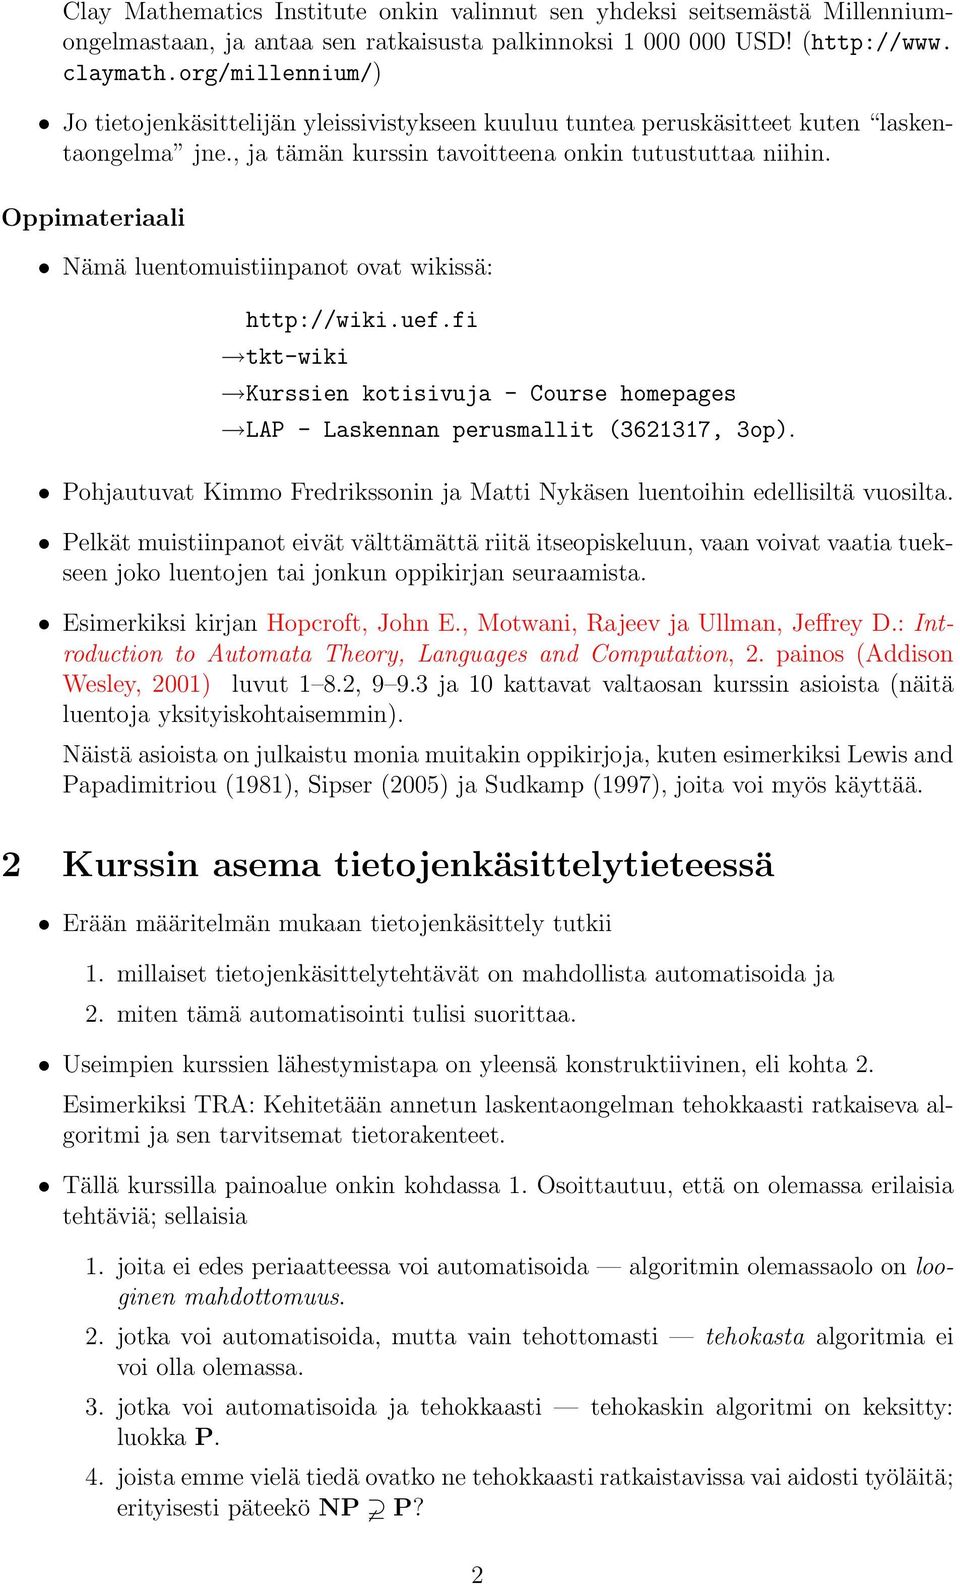 Oppimterili Nämä luentomuistiinpnot ovt wikissä: http://wiki.uef.fi tkt-wiki Kurssien kotisivuj - Course homepges LAP - Lskennn perusmllit (3621317, 3op).